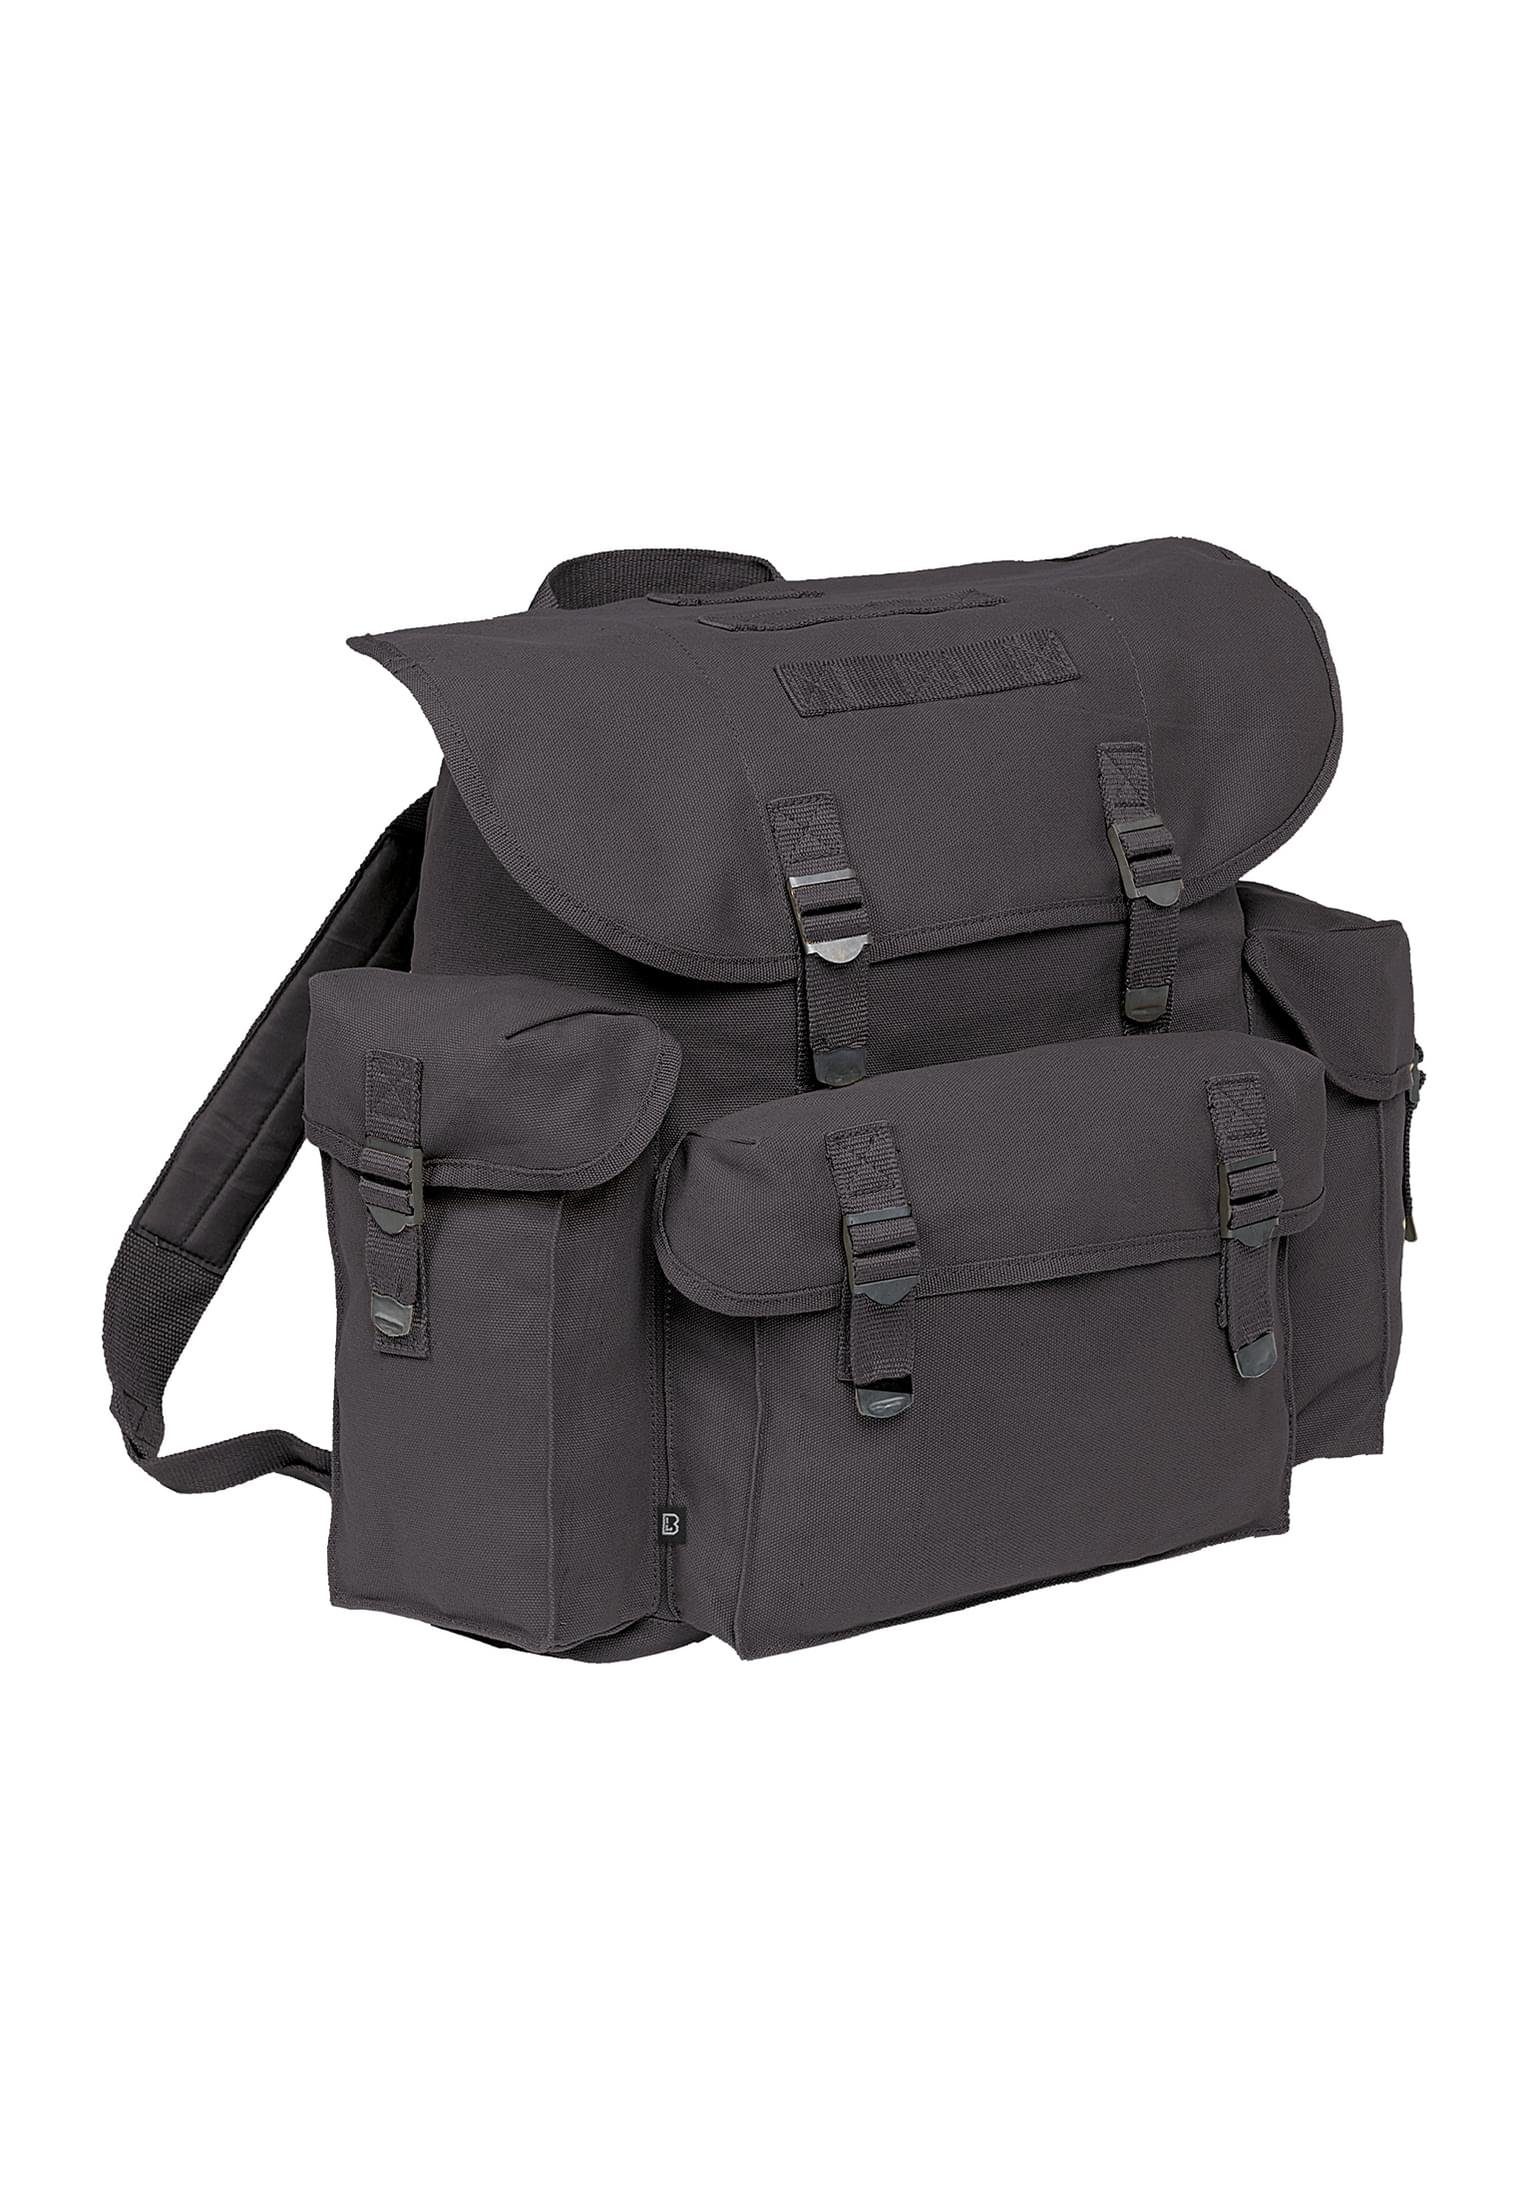 Rucksack Military Brandit Accessoires Bag black Pocket